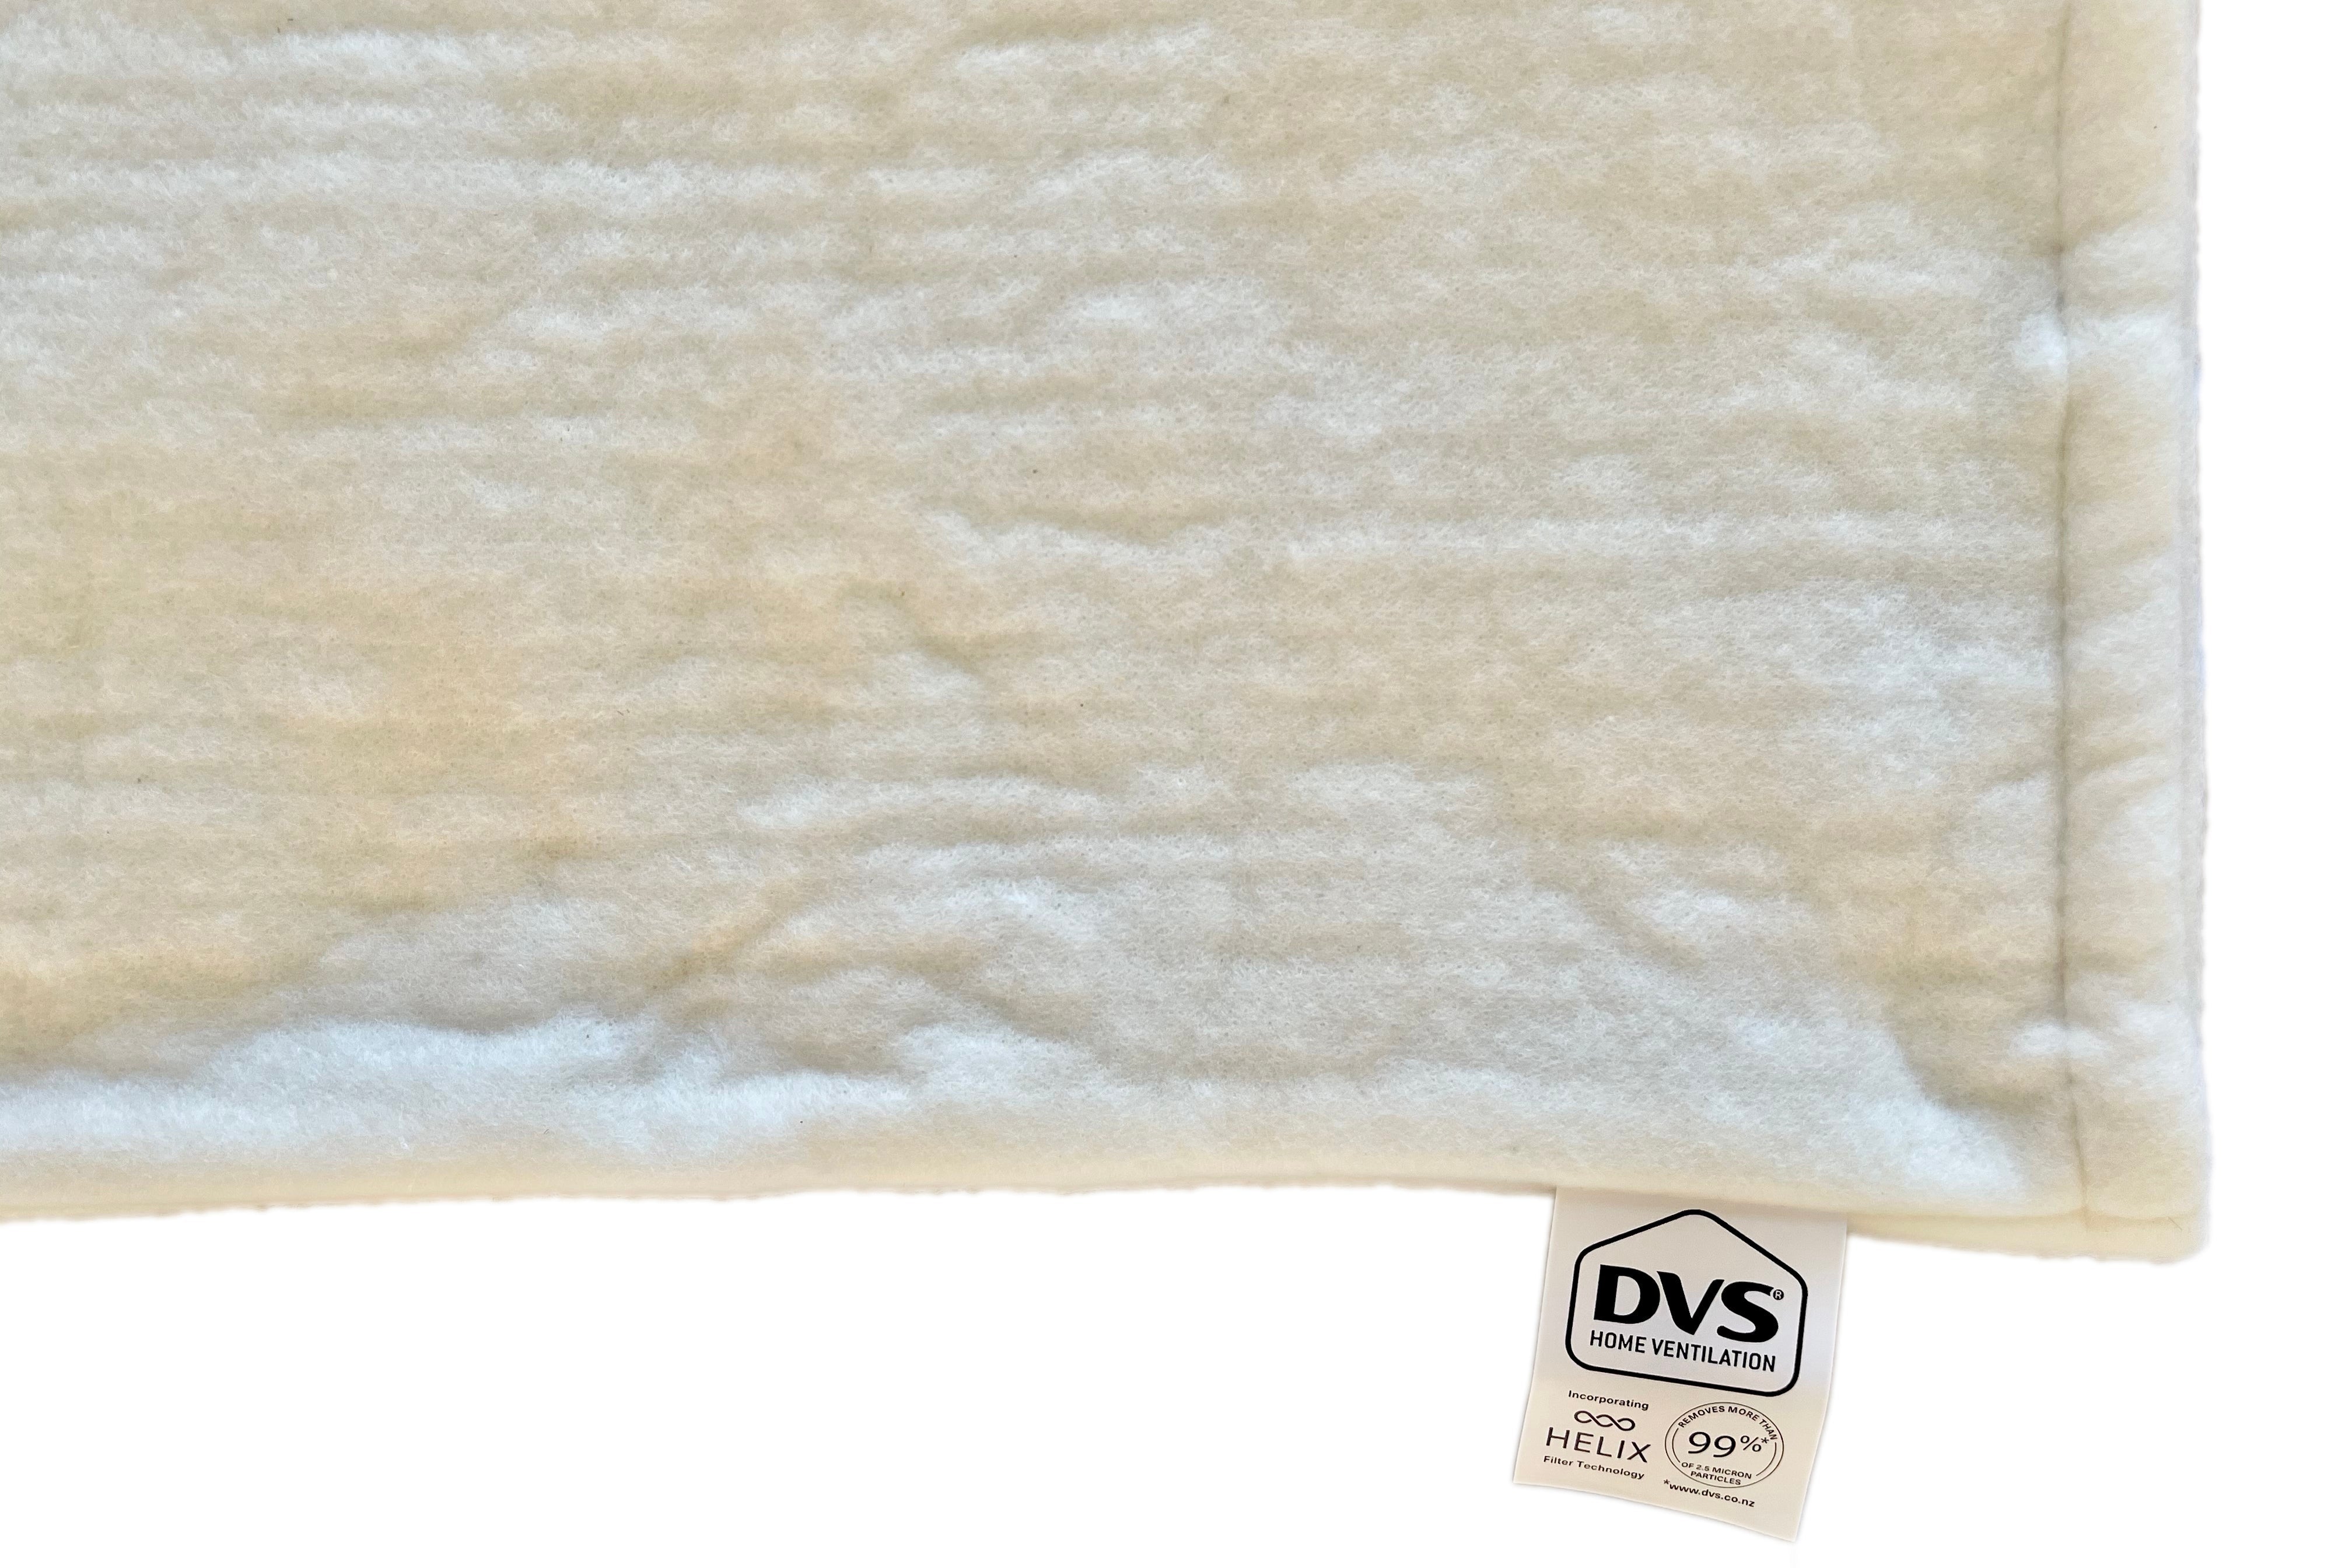 DVS Standard Helix Wool Filter